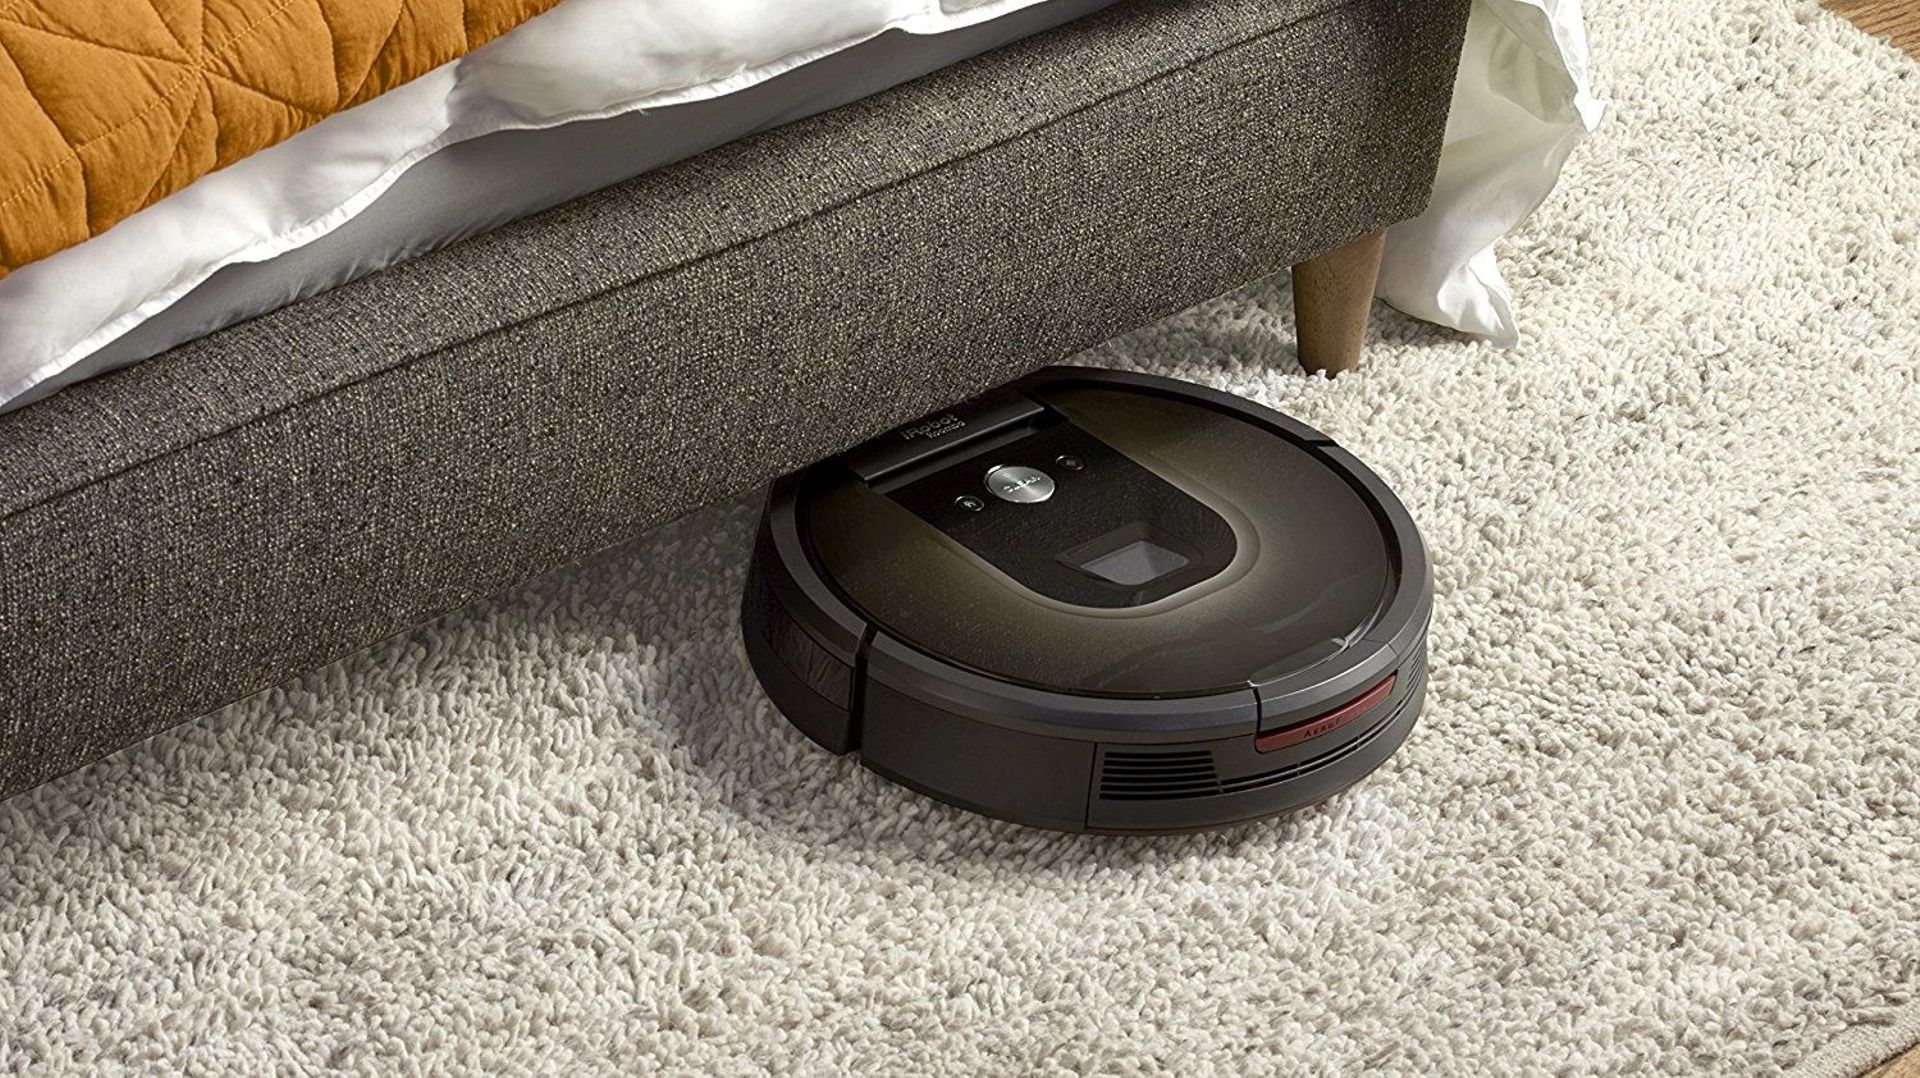 Les aspirateurs robots Roomba pourront prochainement cartographier votre réseau wifi